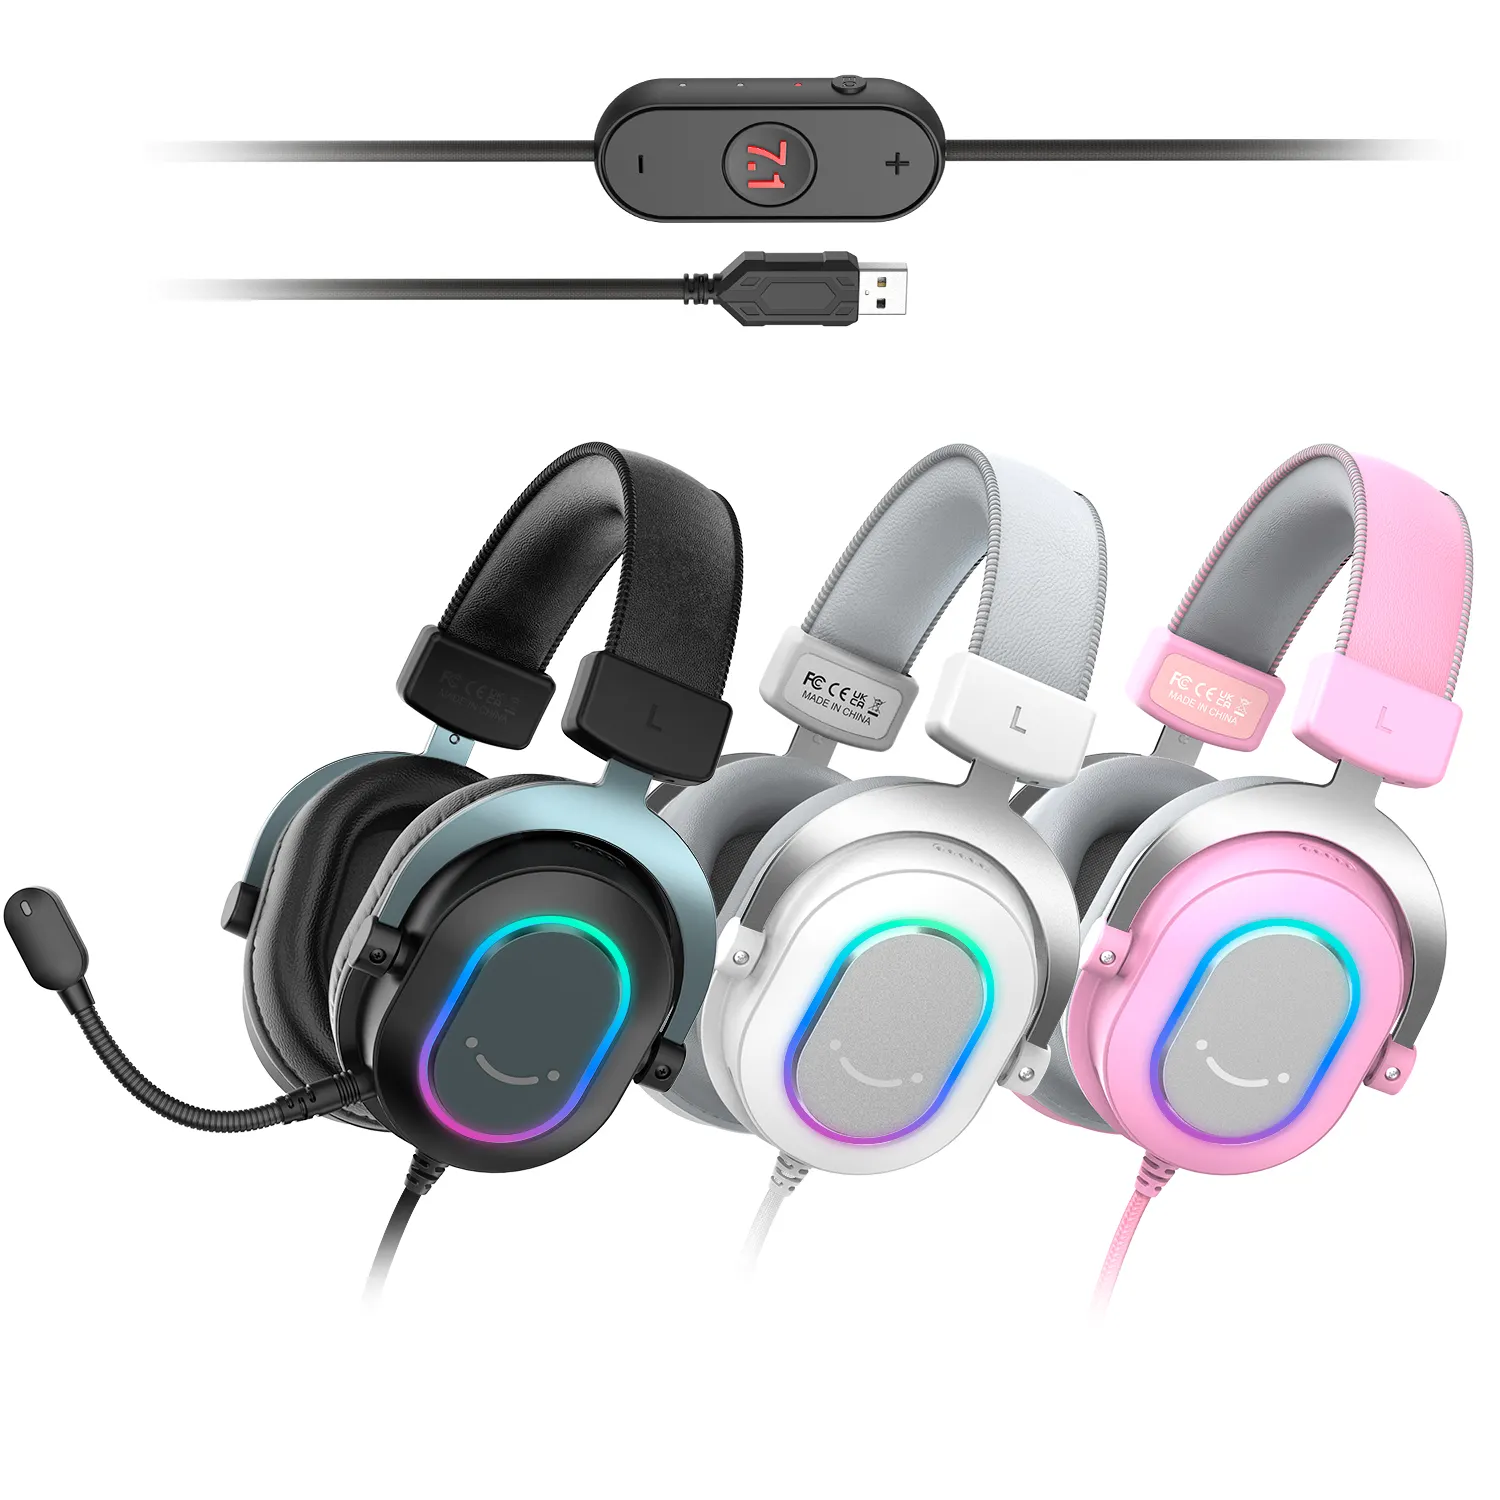 Fifine fone de ouvido gamer h6 com fio, headset para jogos com usb, cancelamento de ruído de alta qualidade, 7.1 rgb